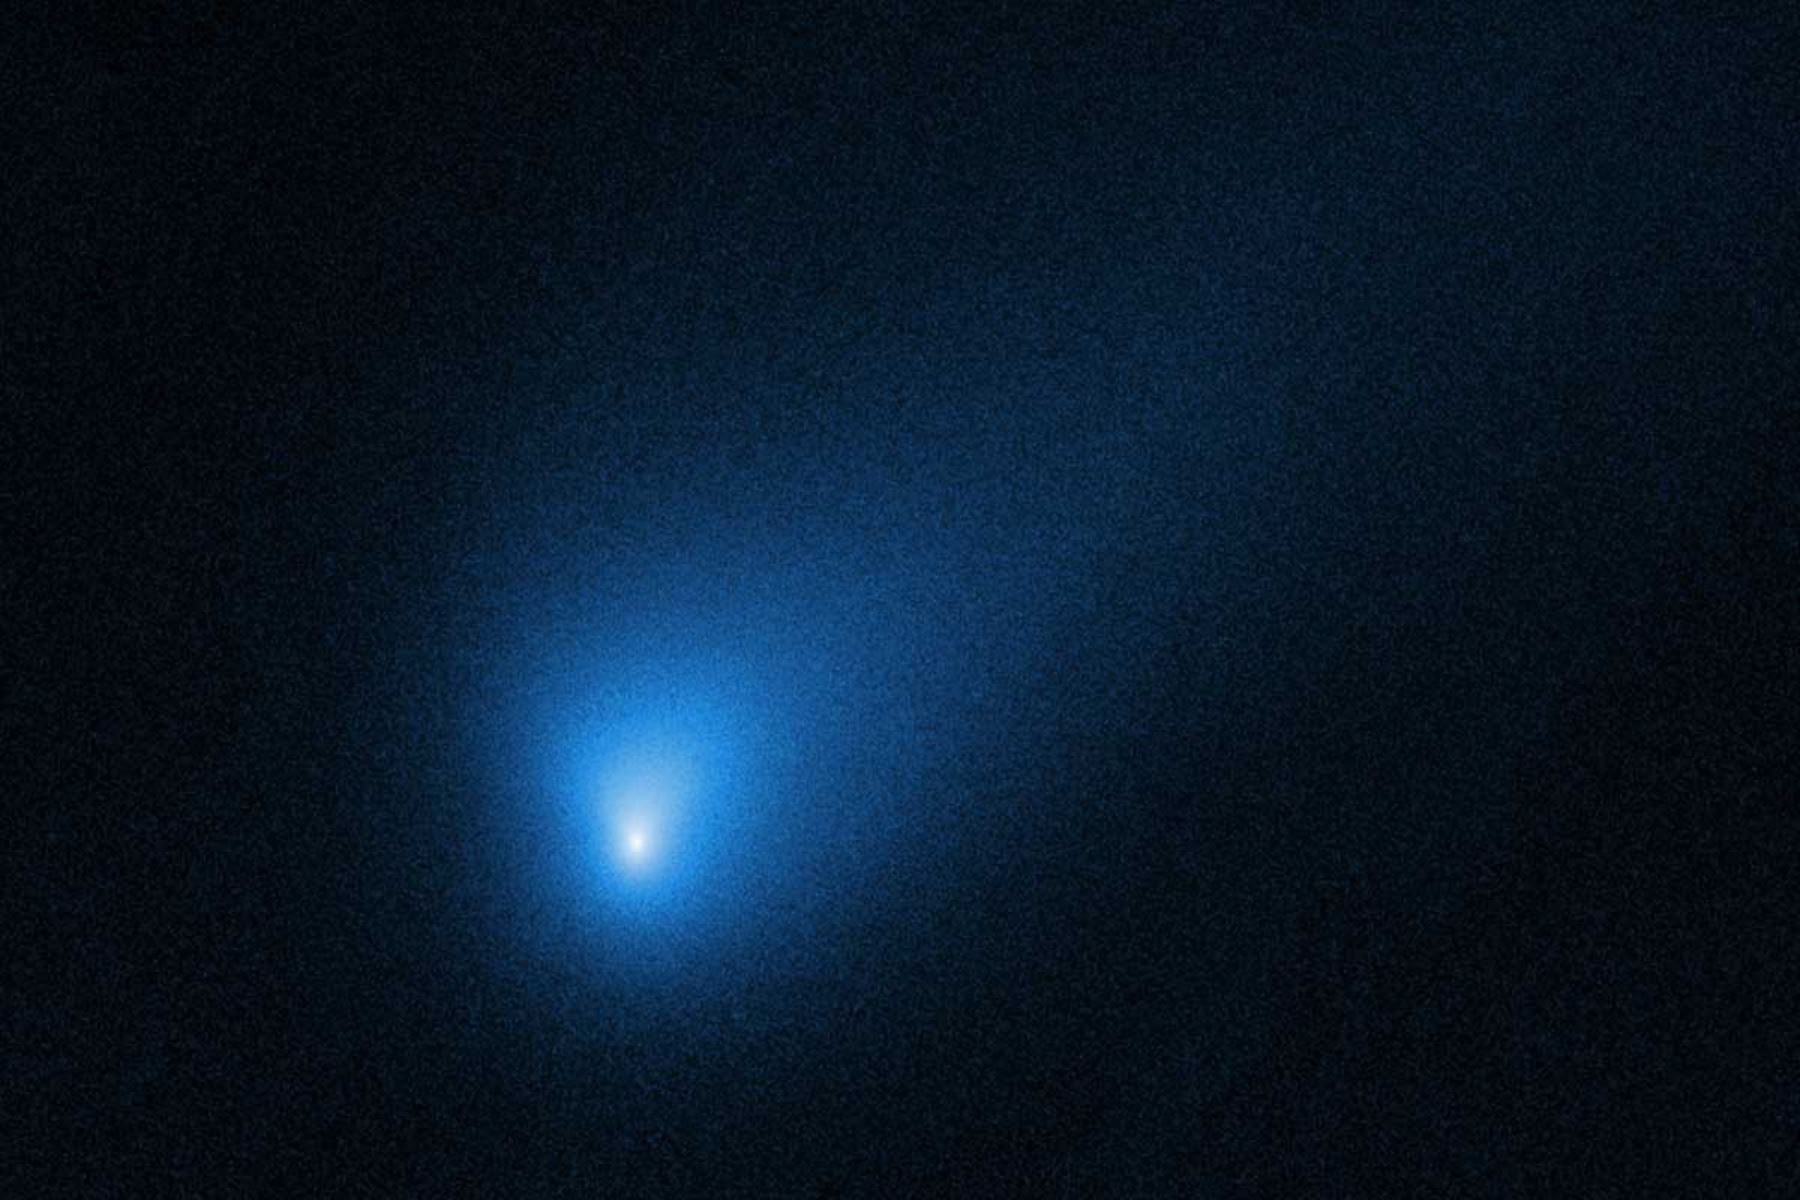 Cometa 2I / Borisov, el primer cometa interestelar. Imagen creada con de exposiciones separadas adquiridas por el instrumento WFC3 en el telescopio espacial Hubble. El color resulta de asignar el color azul a una imagen monocromática (escala de grises). Créditos: NASA y el Space Telescope Science Institute (STScI)